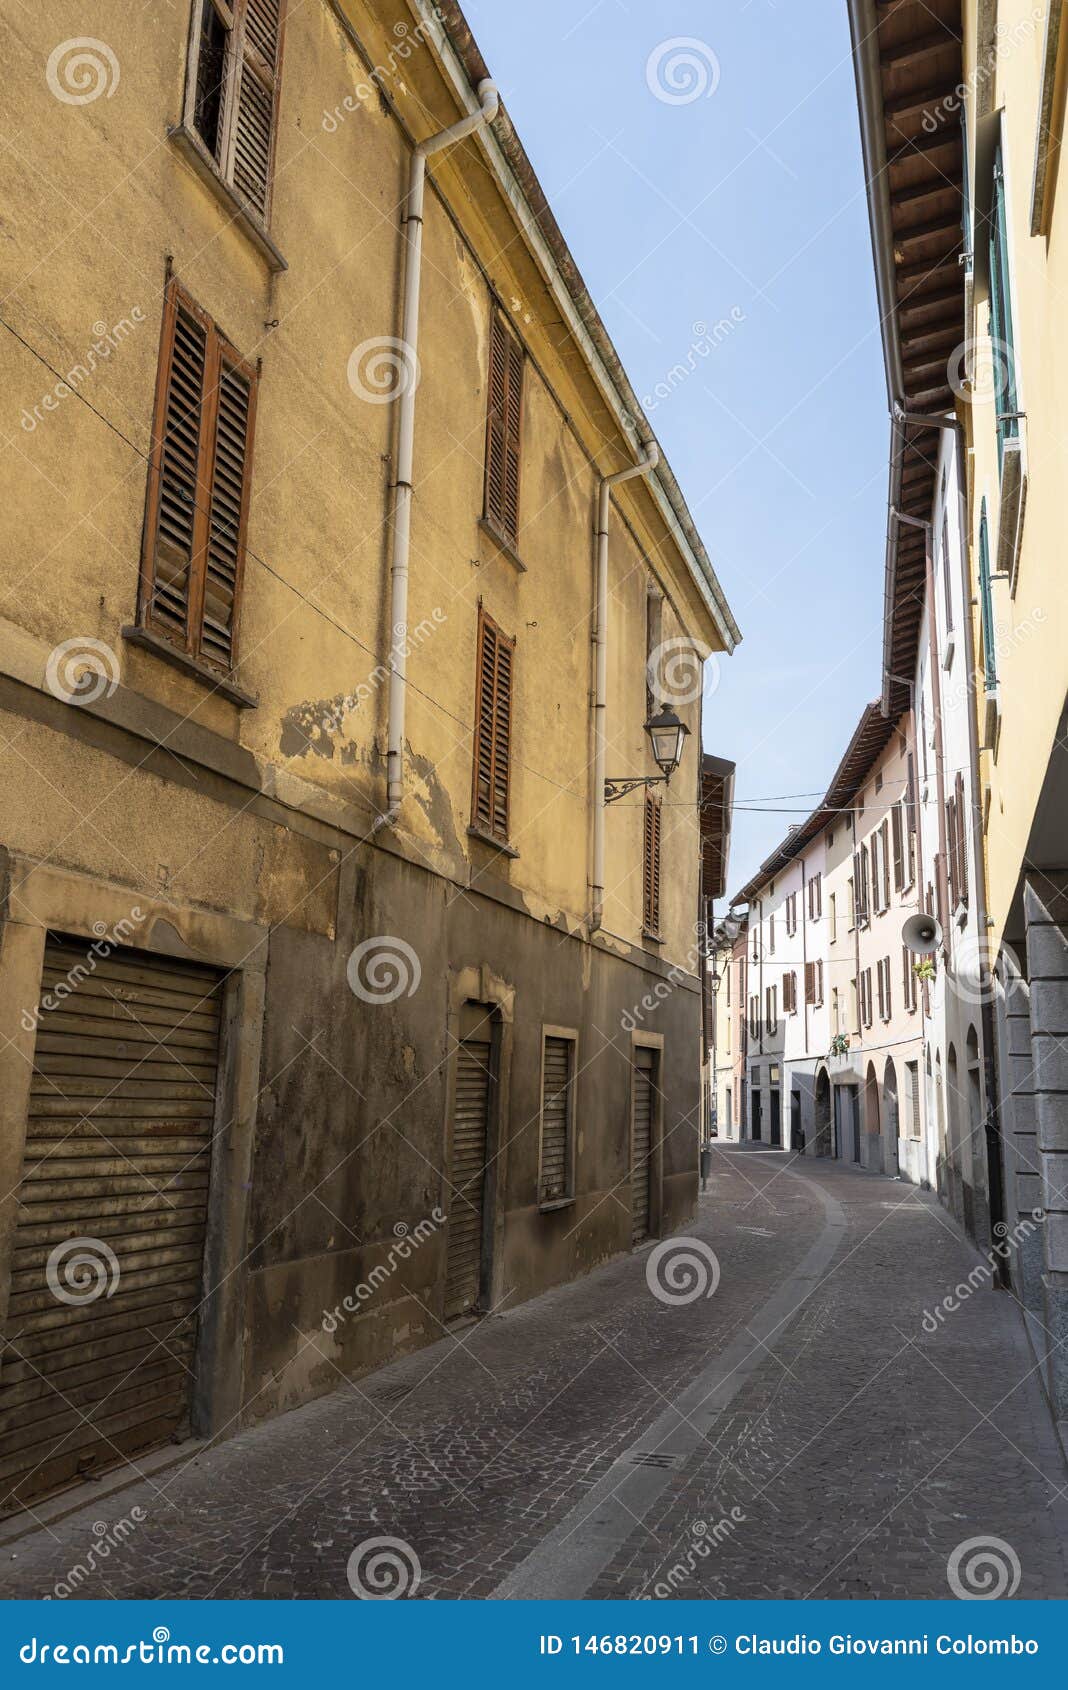 old street of oggiono, italy